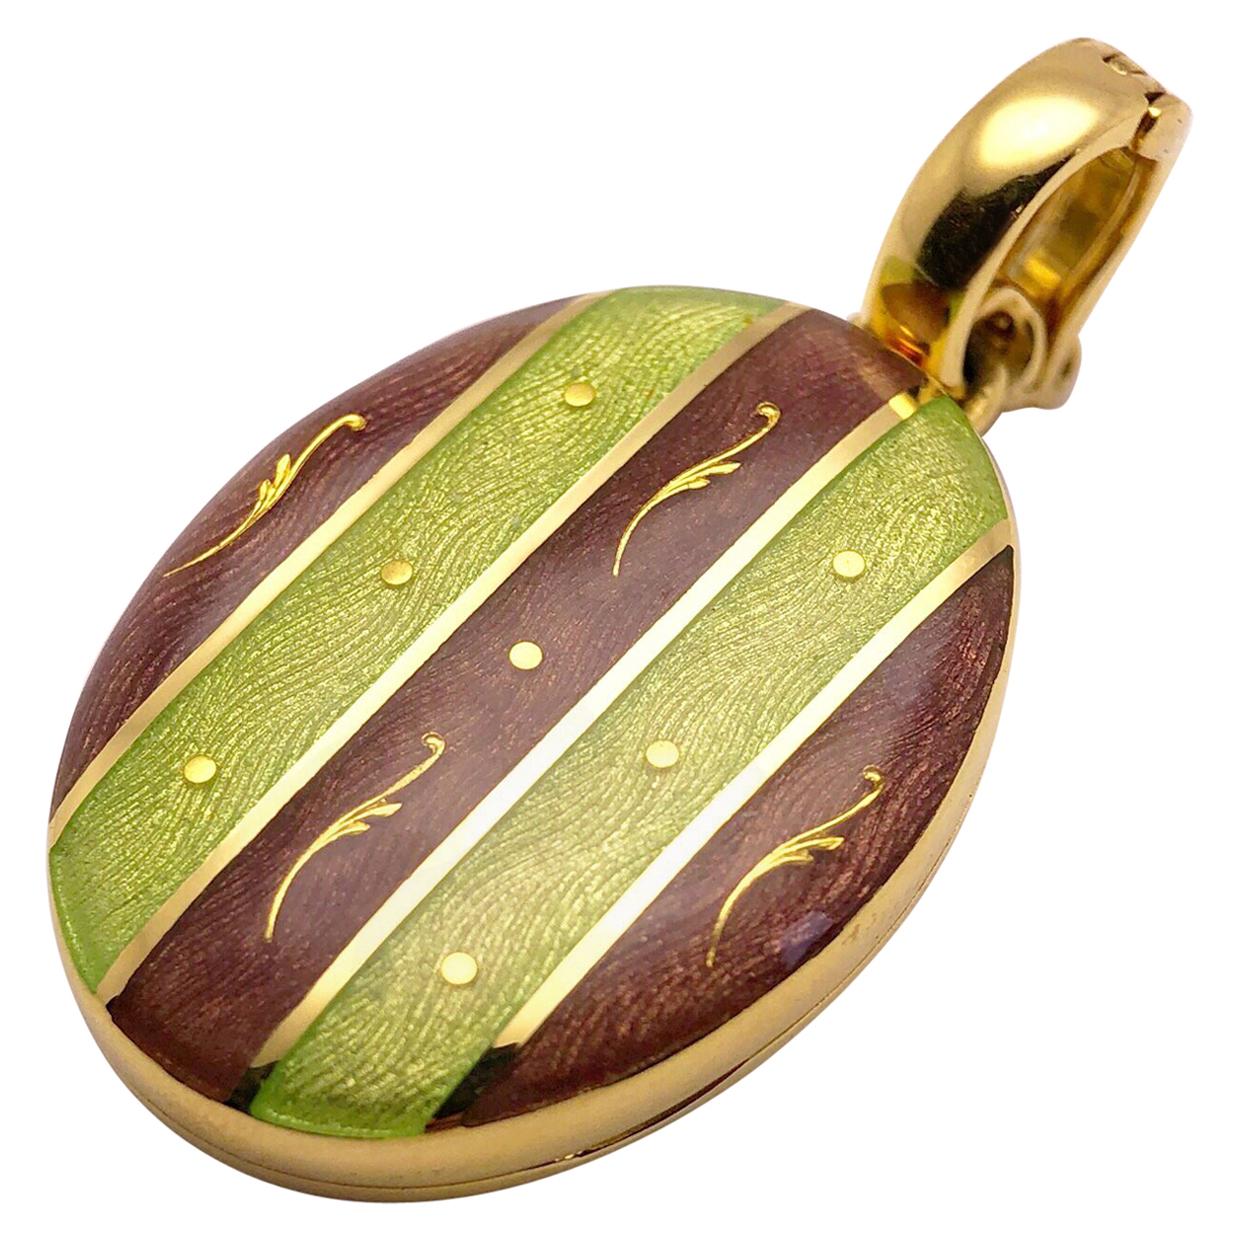 Modern Faberge 18 Karat Gold, Guilloché Enamel Oval Locket with Certificate